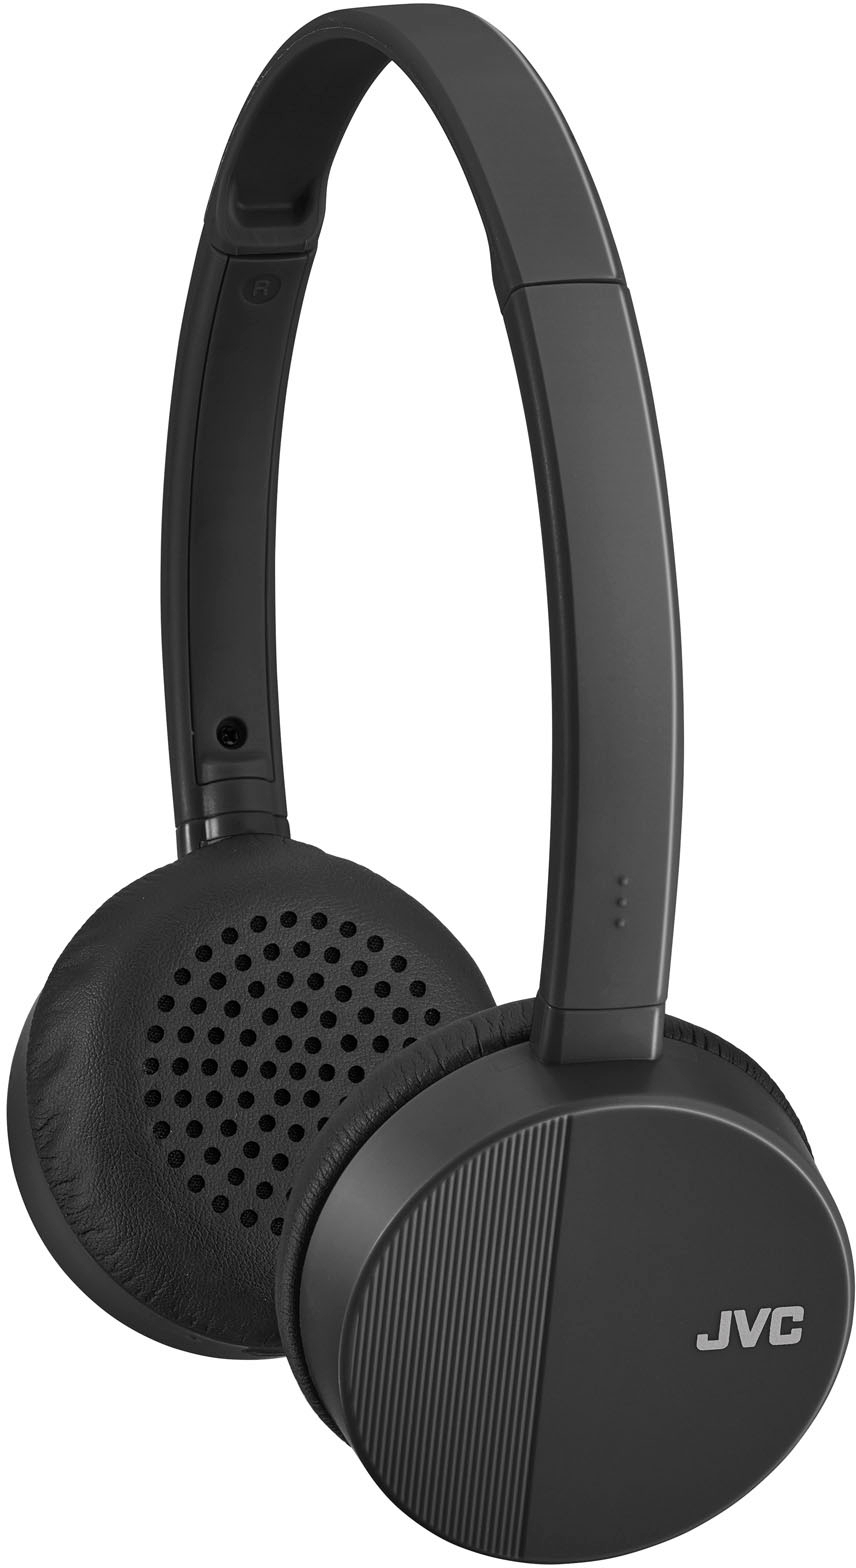 JVC FLATS Wireless On-Ear Headphones Black HAS23WB - Best Buy